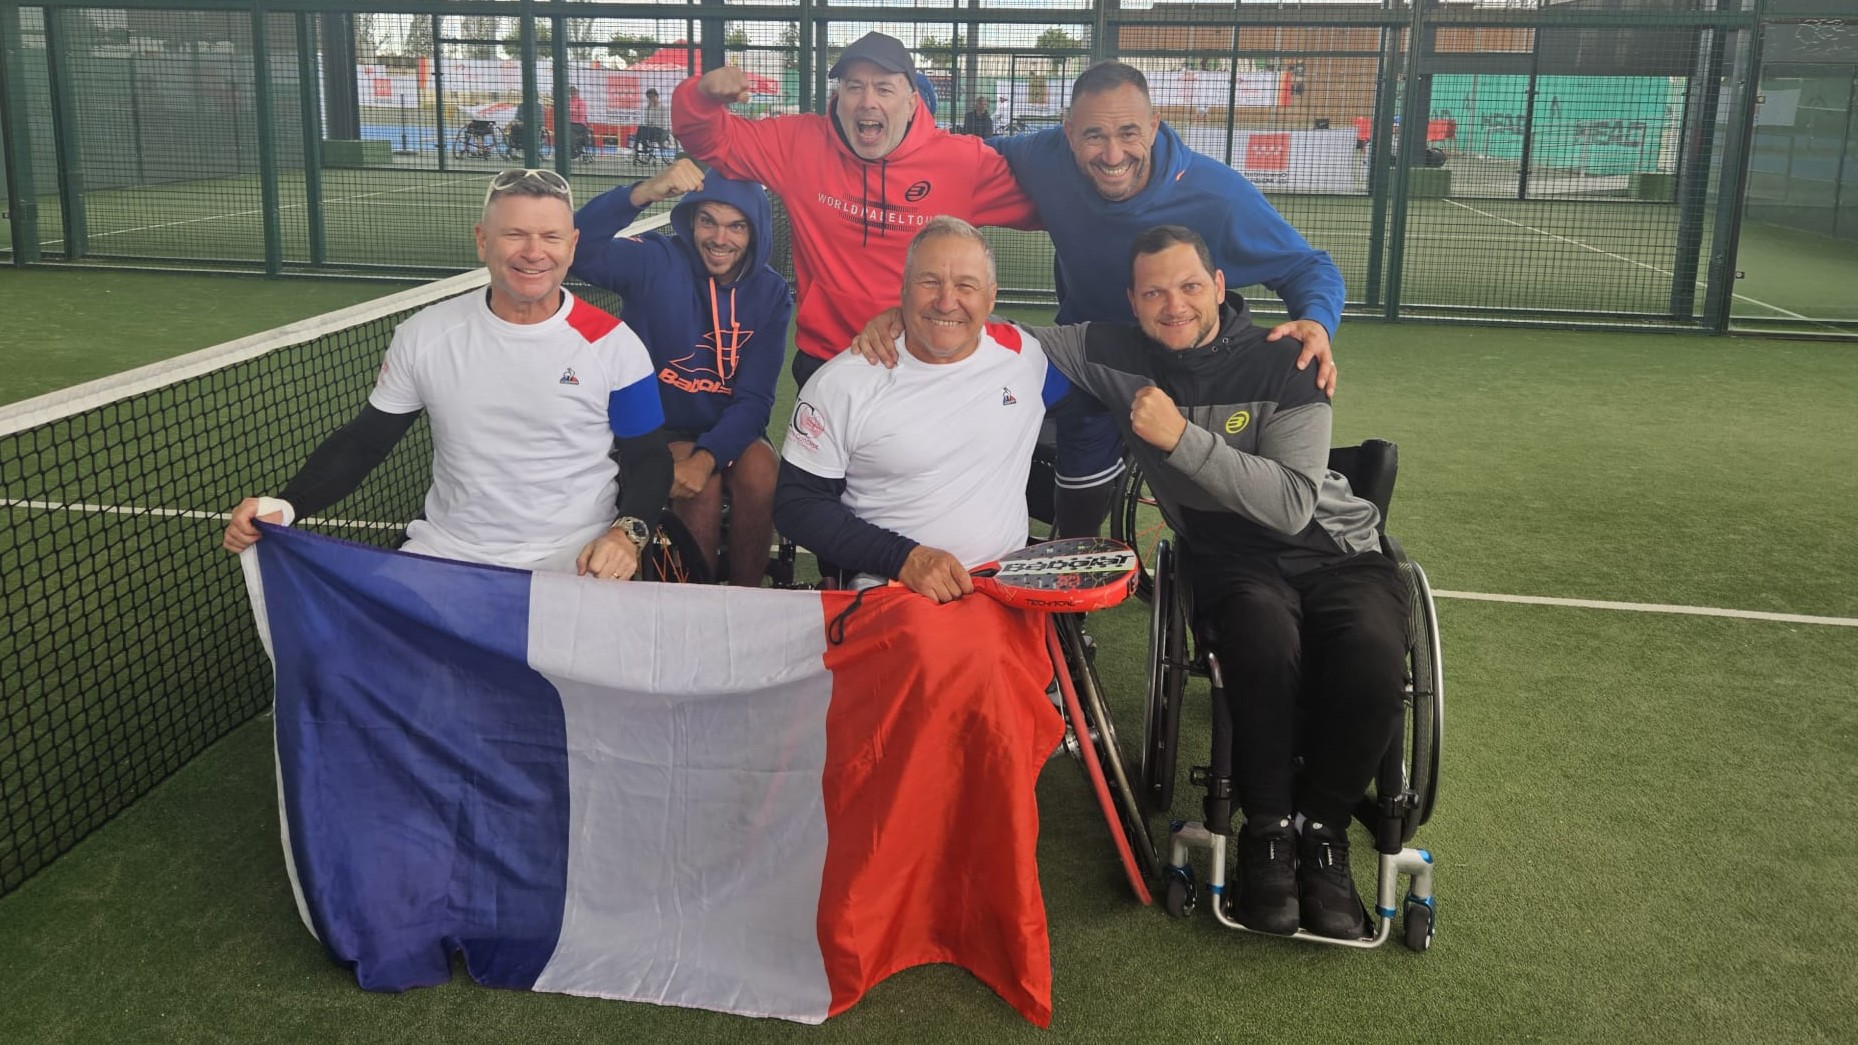 Maailmoja padel-nojatuoli: täysi kortti Ranskalle Marokkoa vastaan